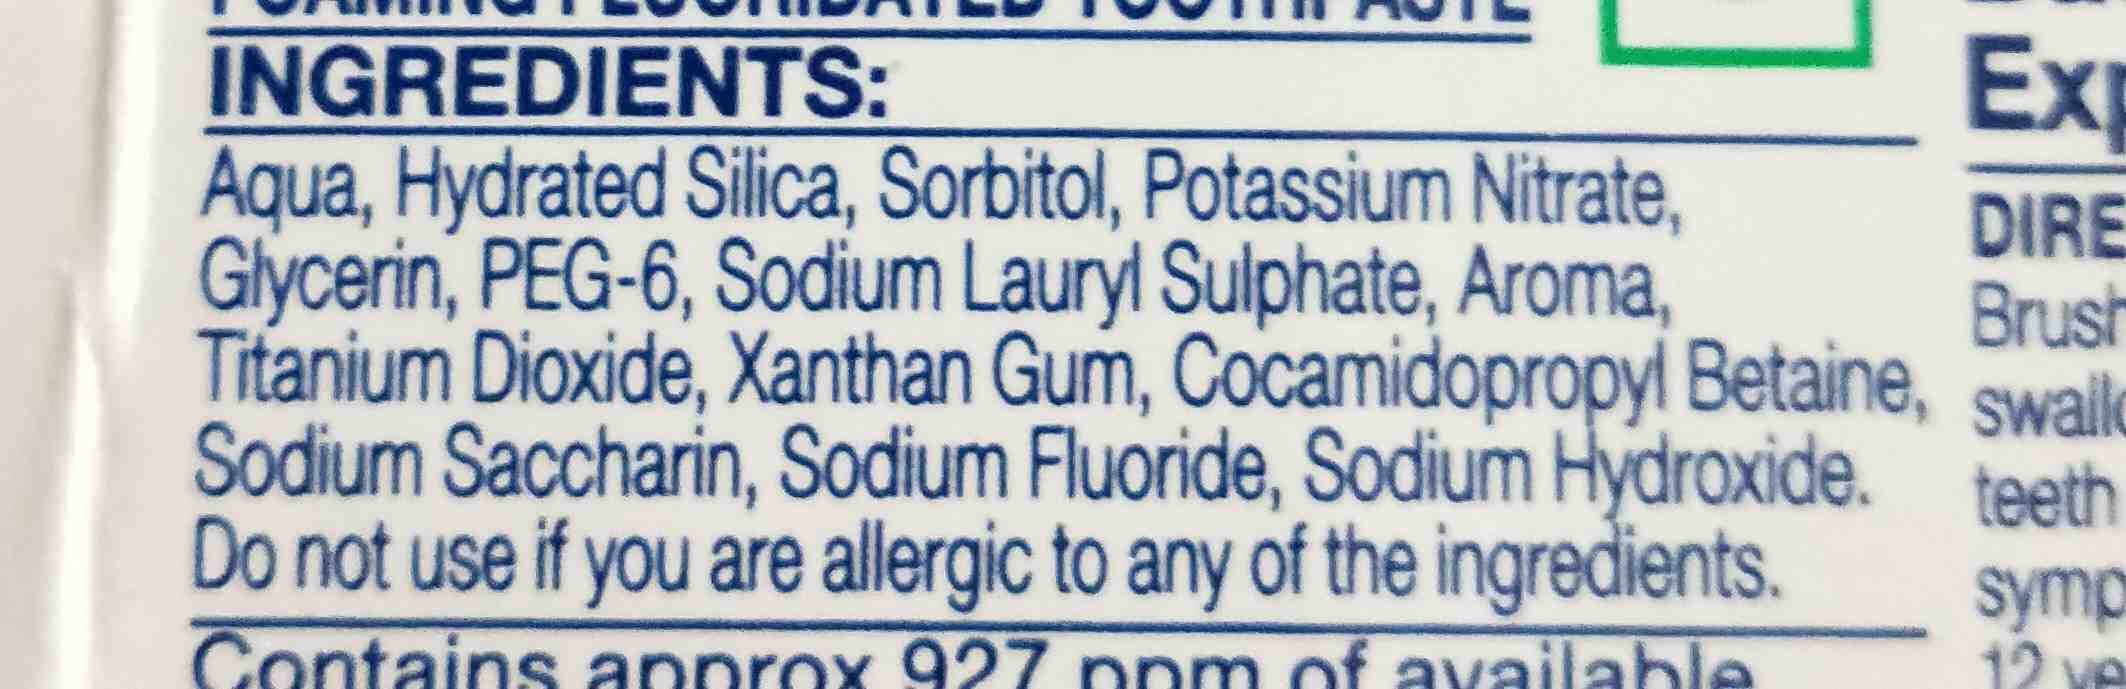 sensodyne toothpaste ingredients